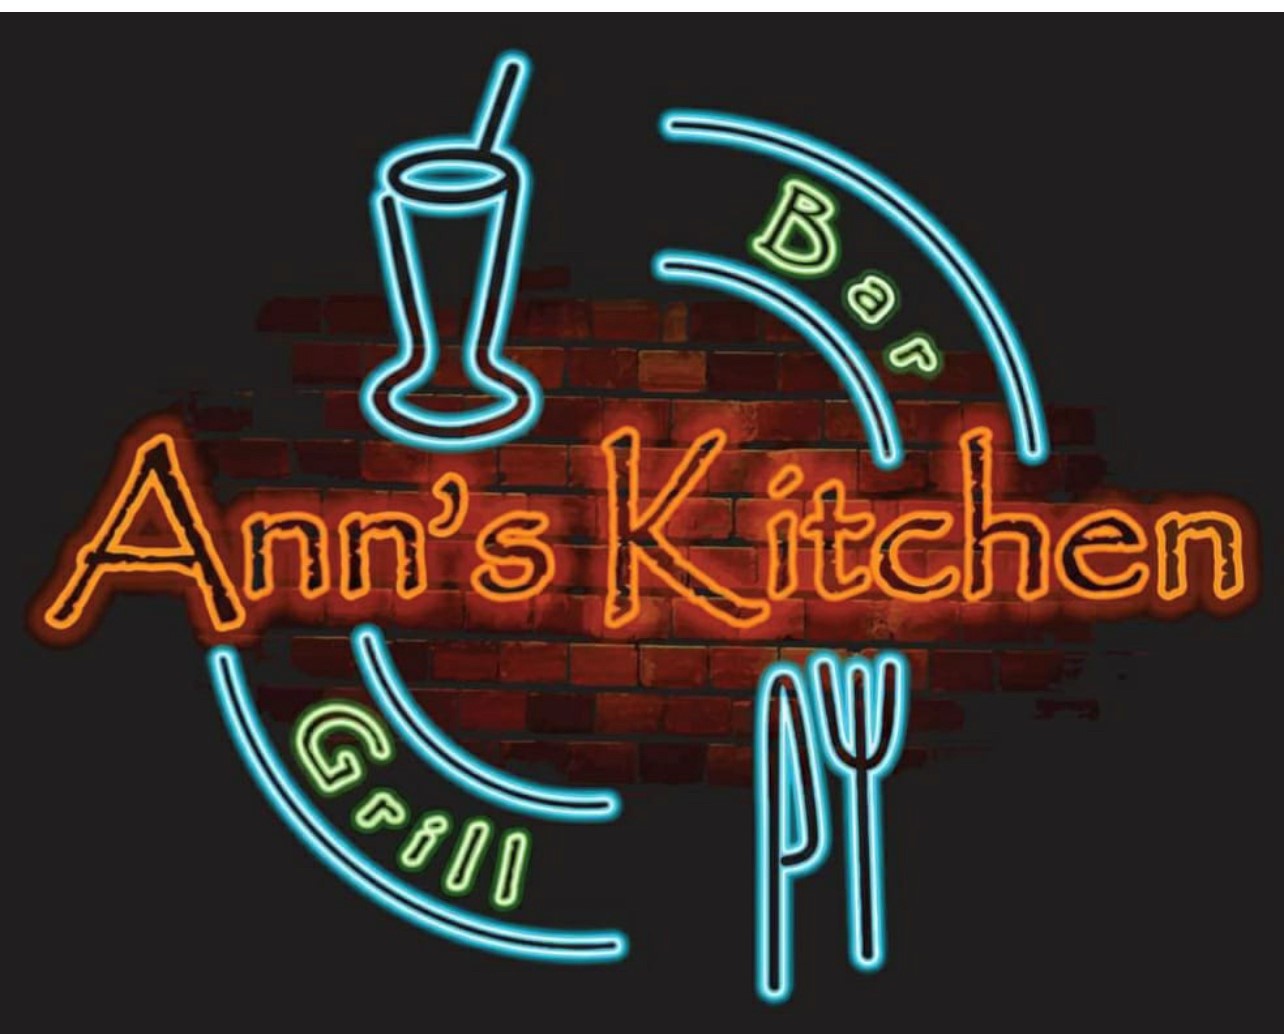 Ann's Kitchen - logo